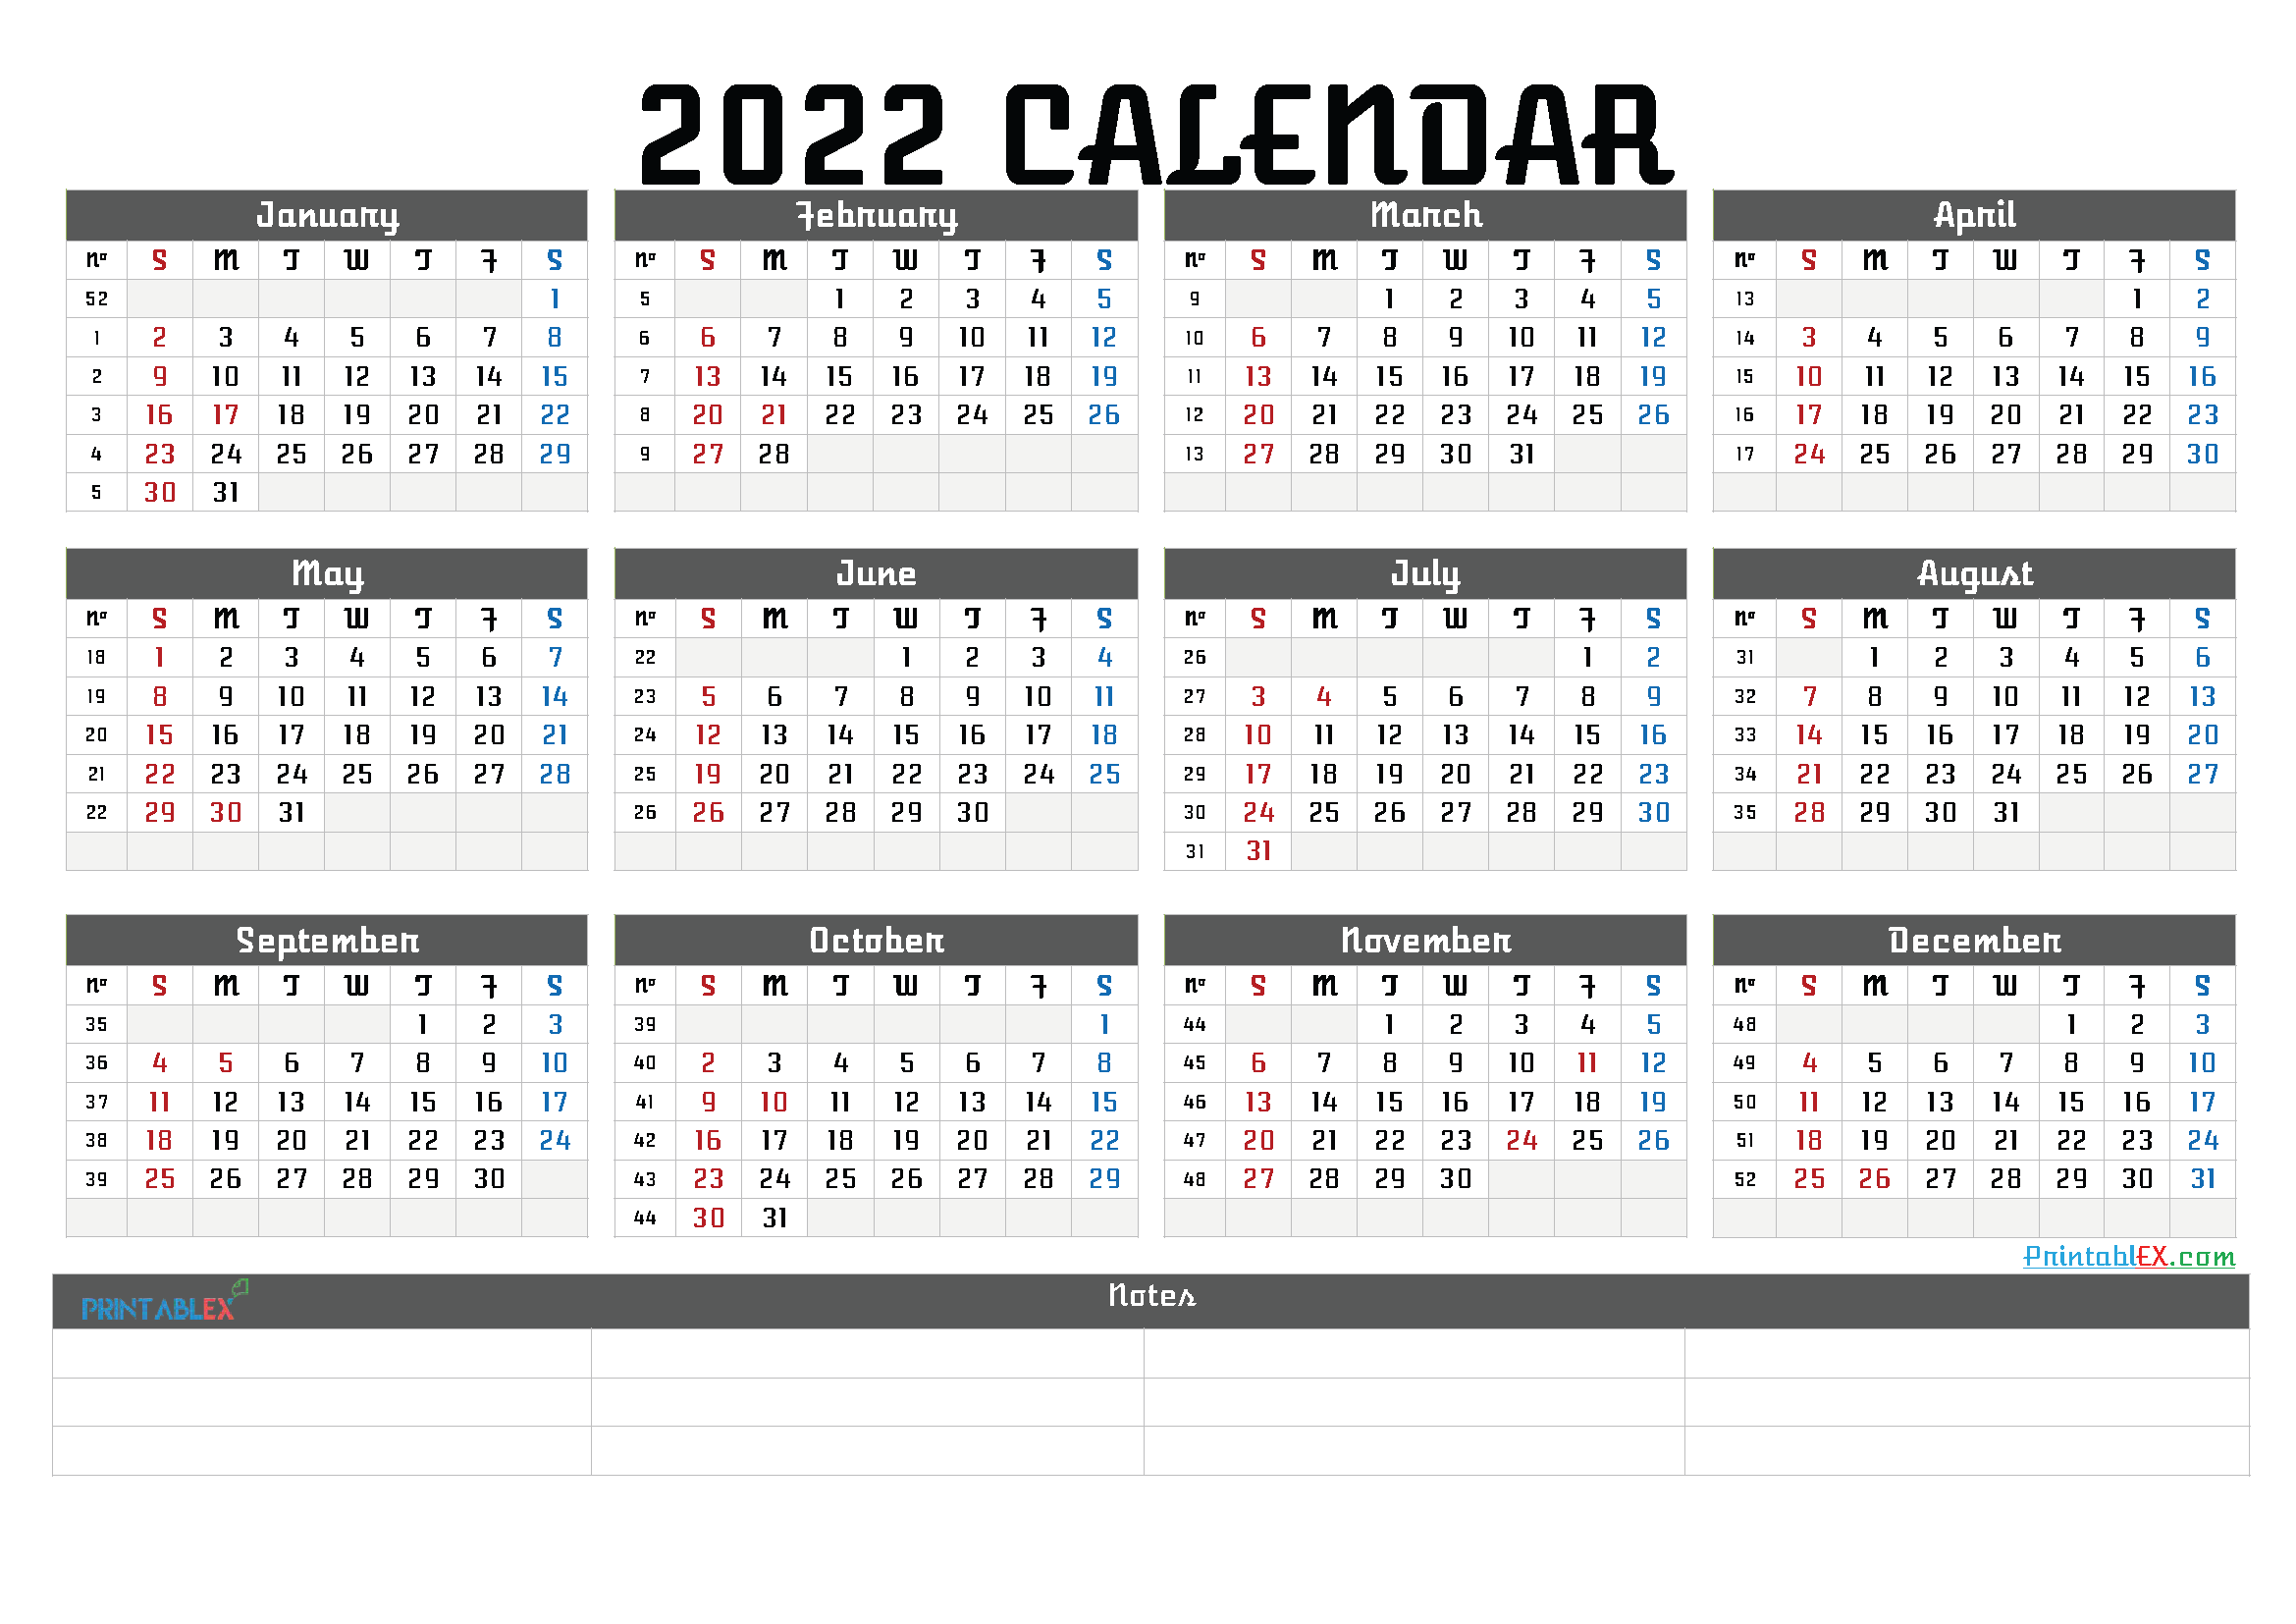 Numbered Week Calendar 2022 Calendar 2022 With Week Numbers (Landscape, Pdf, Image)